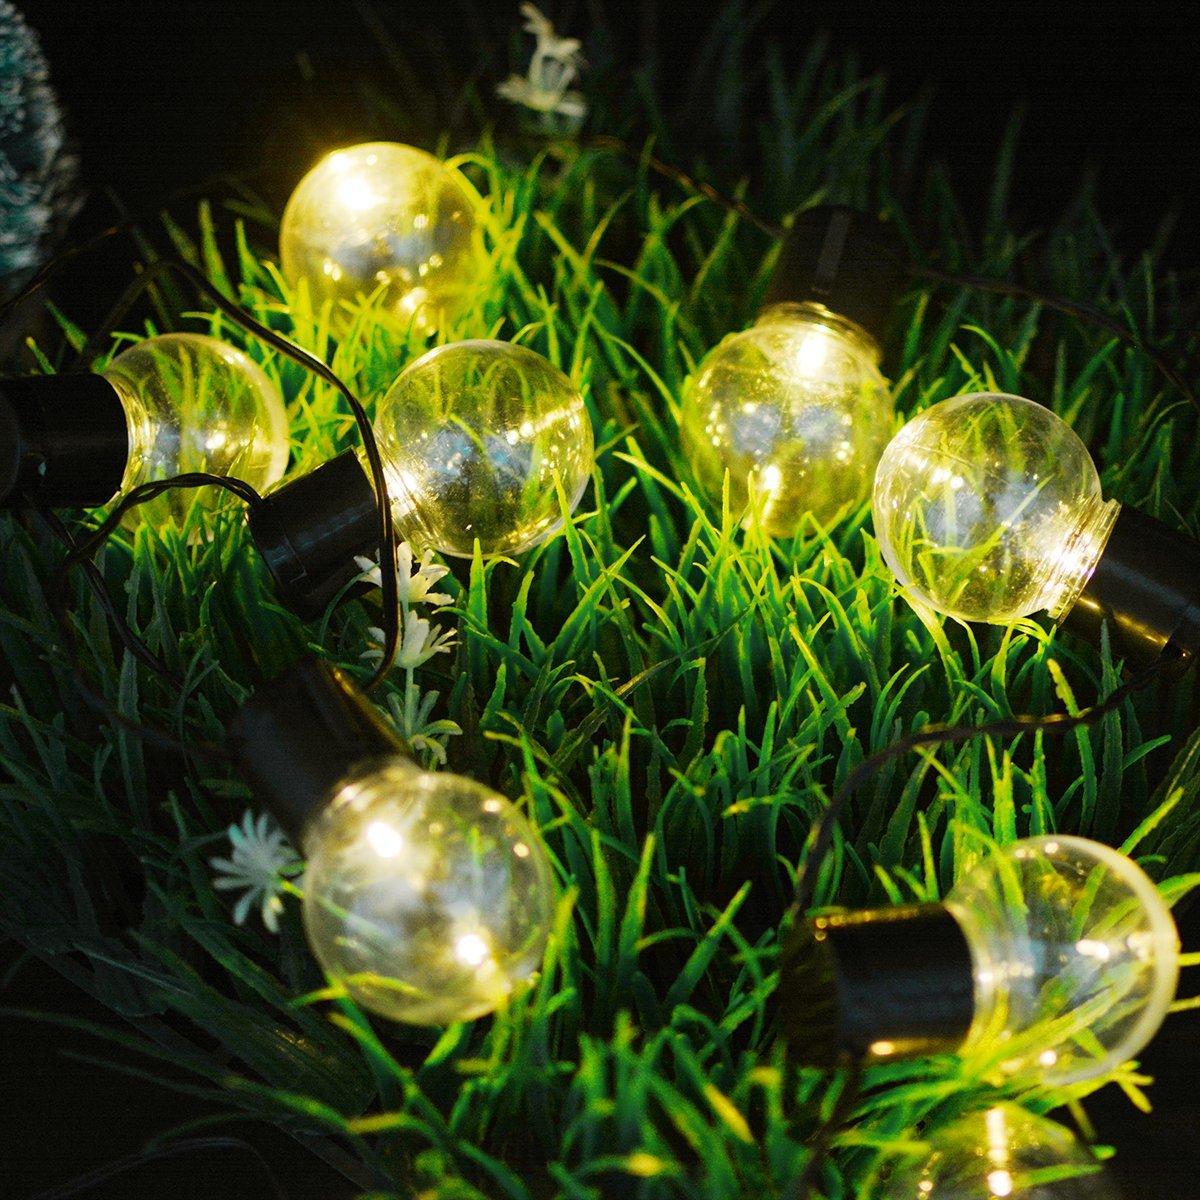 ledイルミネーションライト ソーラー充電式 光センサー内蔵 電飾 電球型 ストリングスライト 防水 ガーデンライト クリスマス ハロウィン の画像2